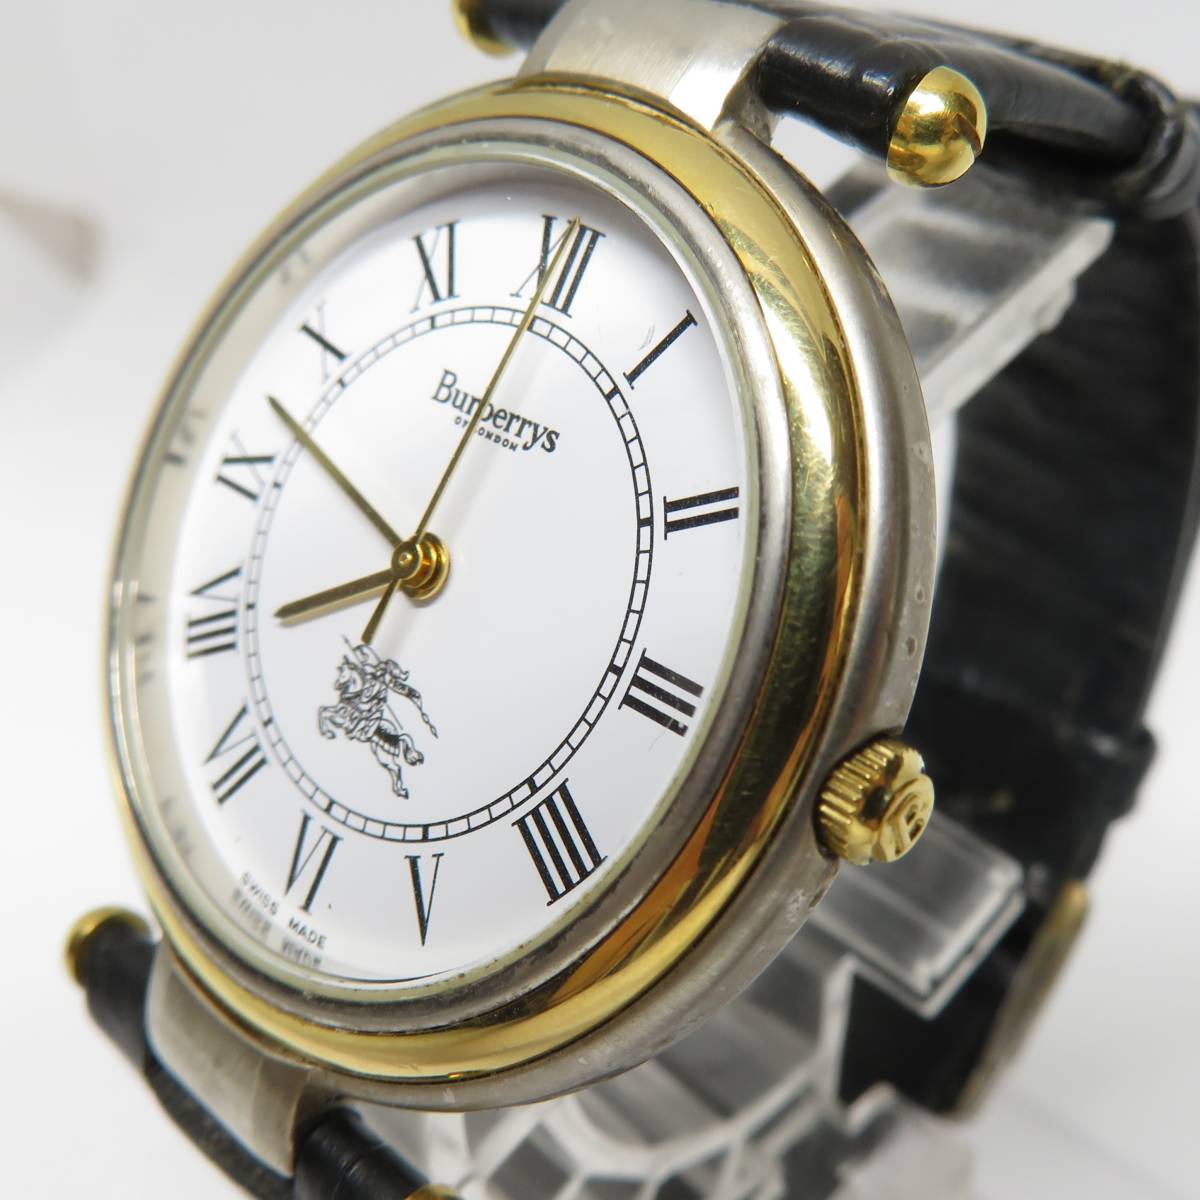 バーバリーズ クオーツ腕時計 ホワイト文字盤 ※動作保証なしの画像2